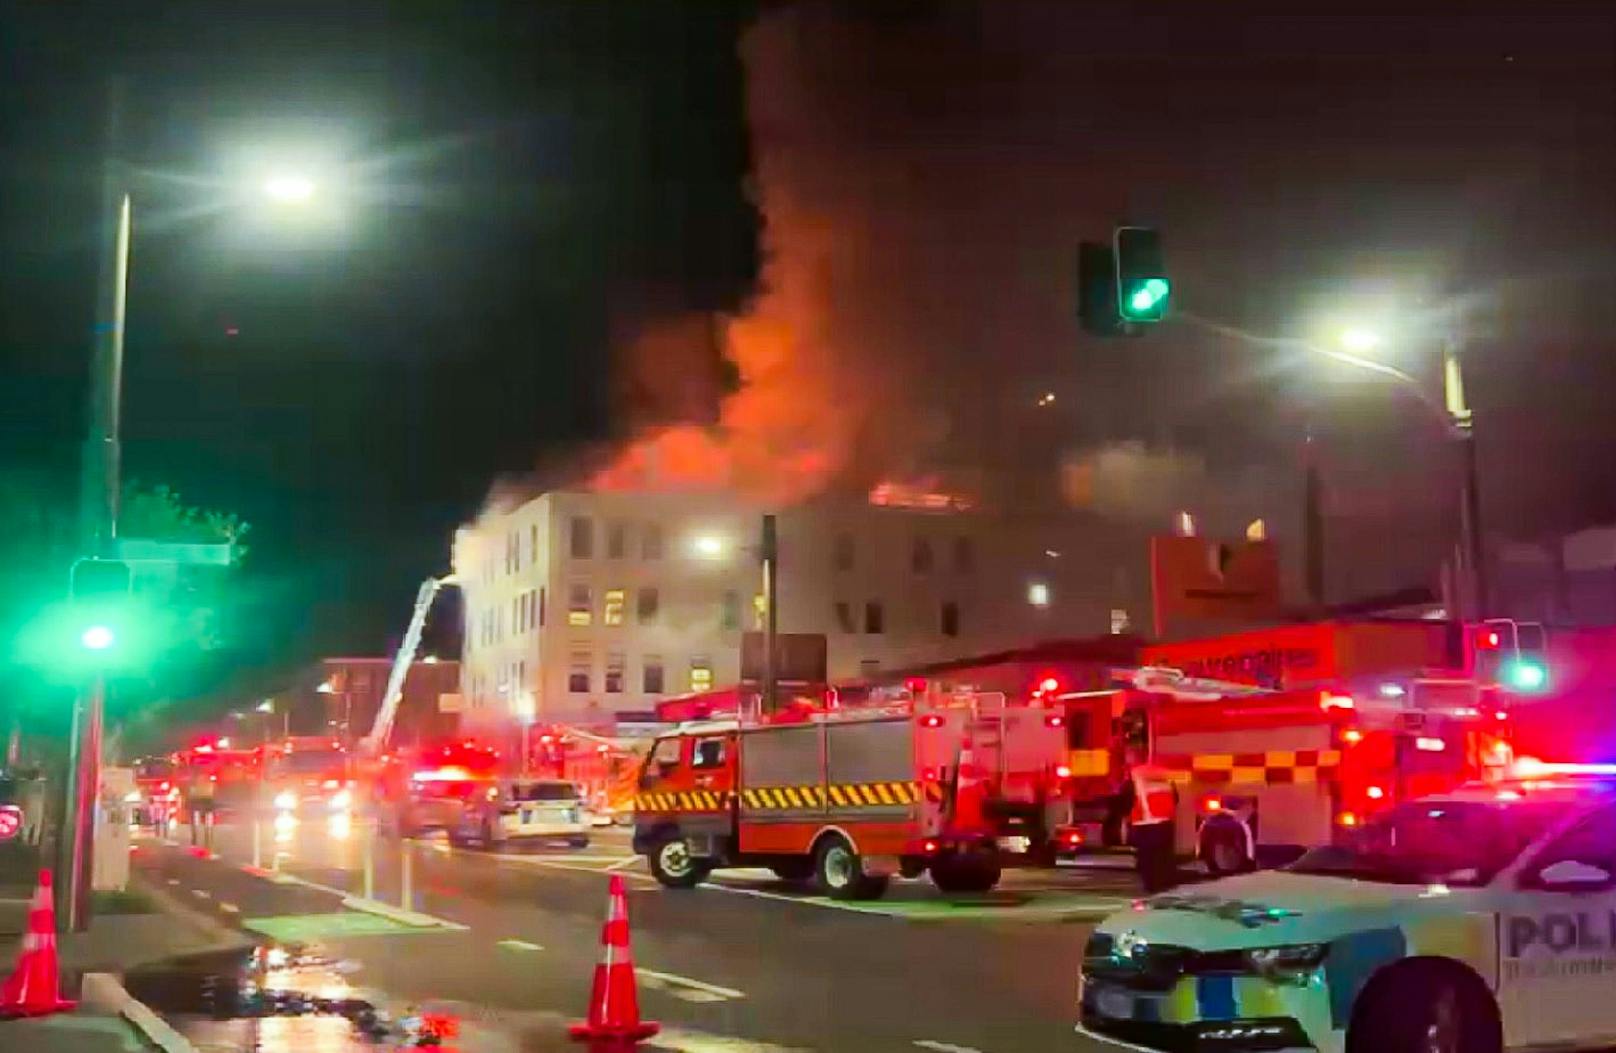 Bei dem Großbrand in Wellington wurden laut ersten Informationen mindestens zehn Personen getötet.